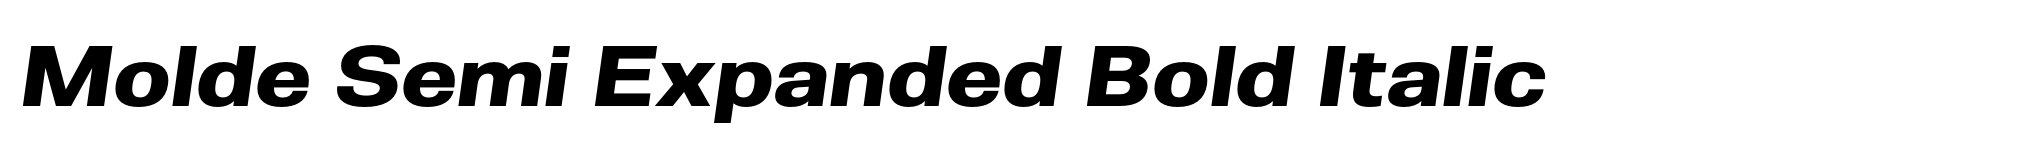 Molde Semi Expanded Bold Italic image